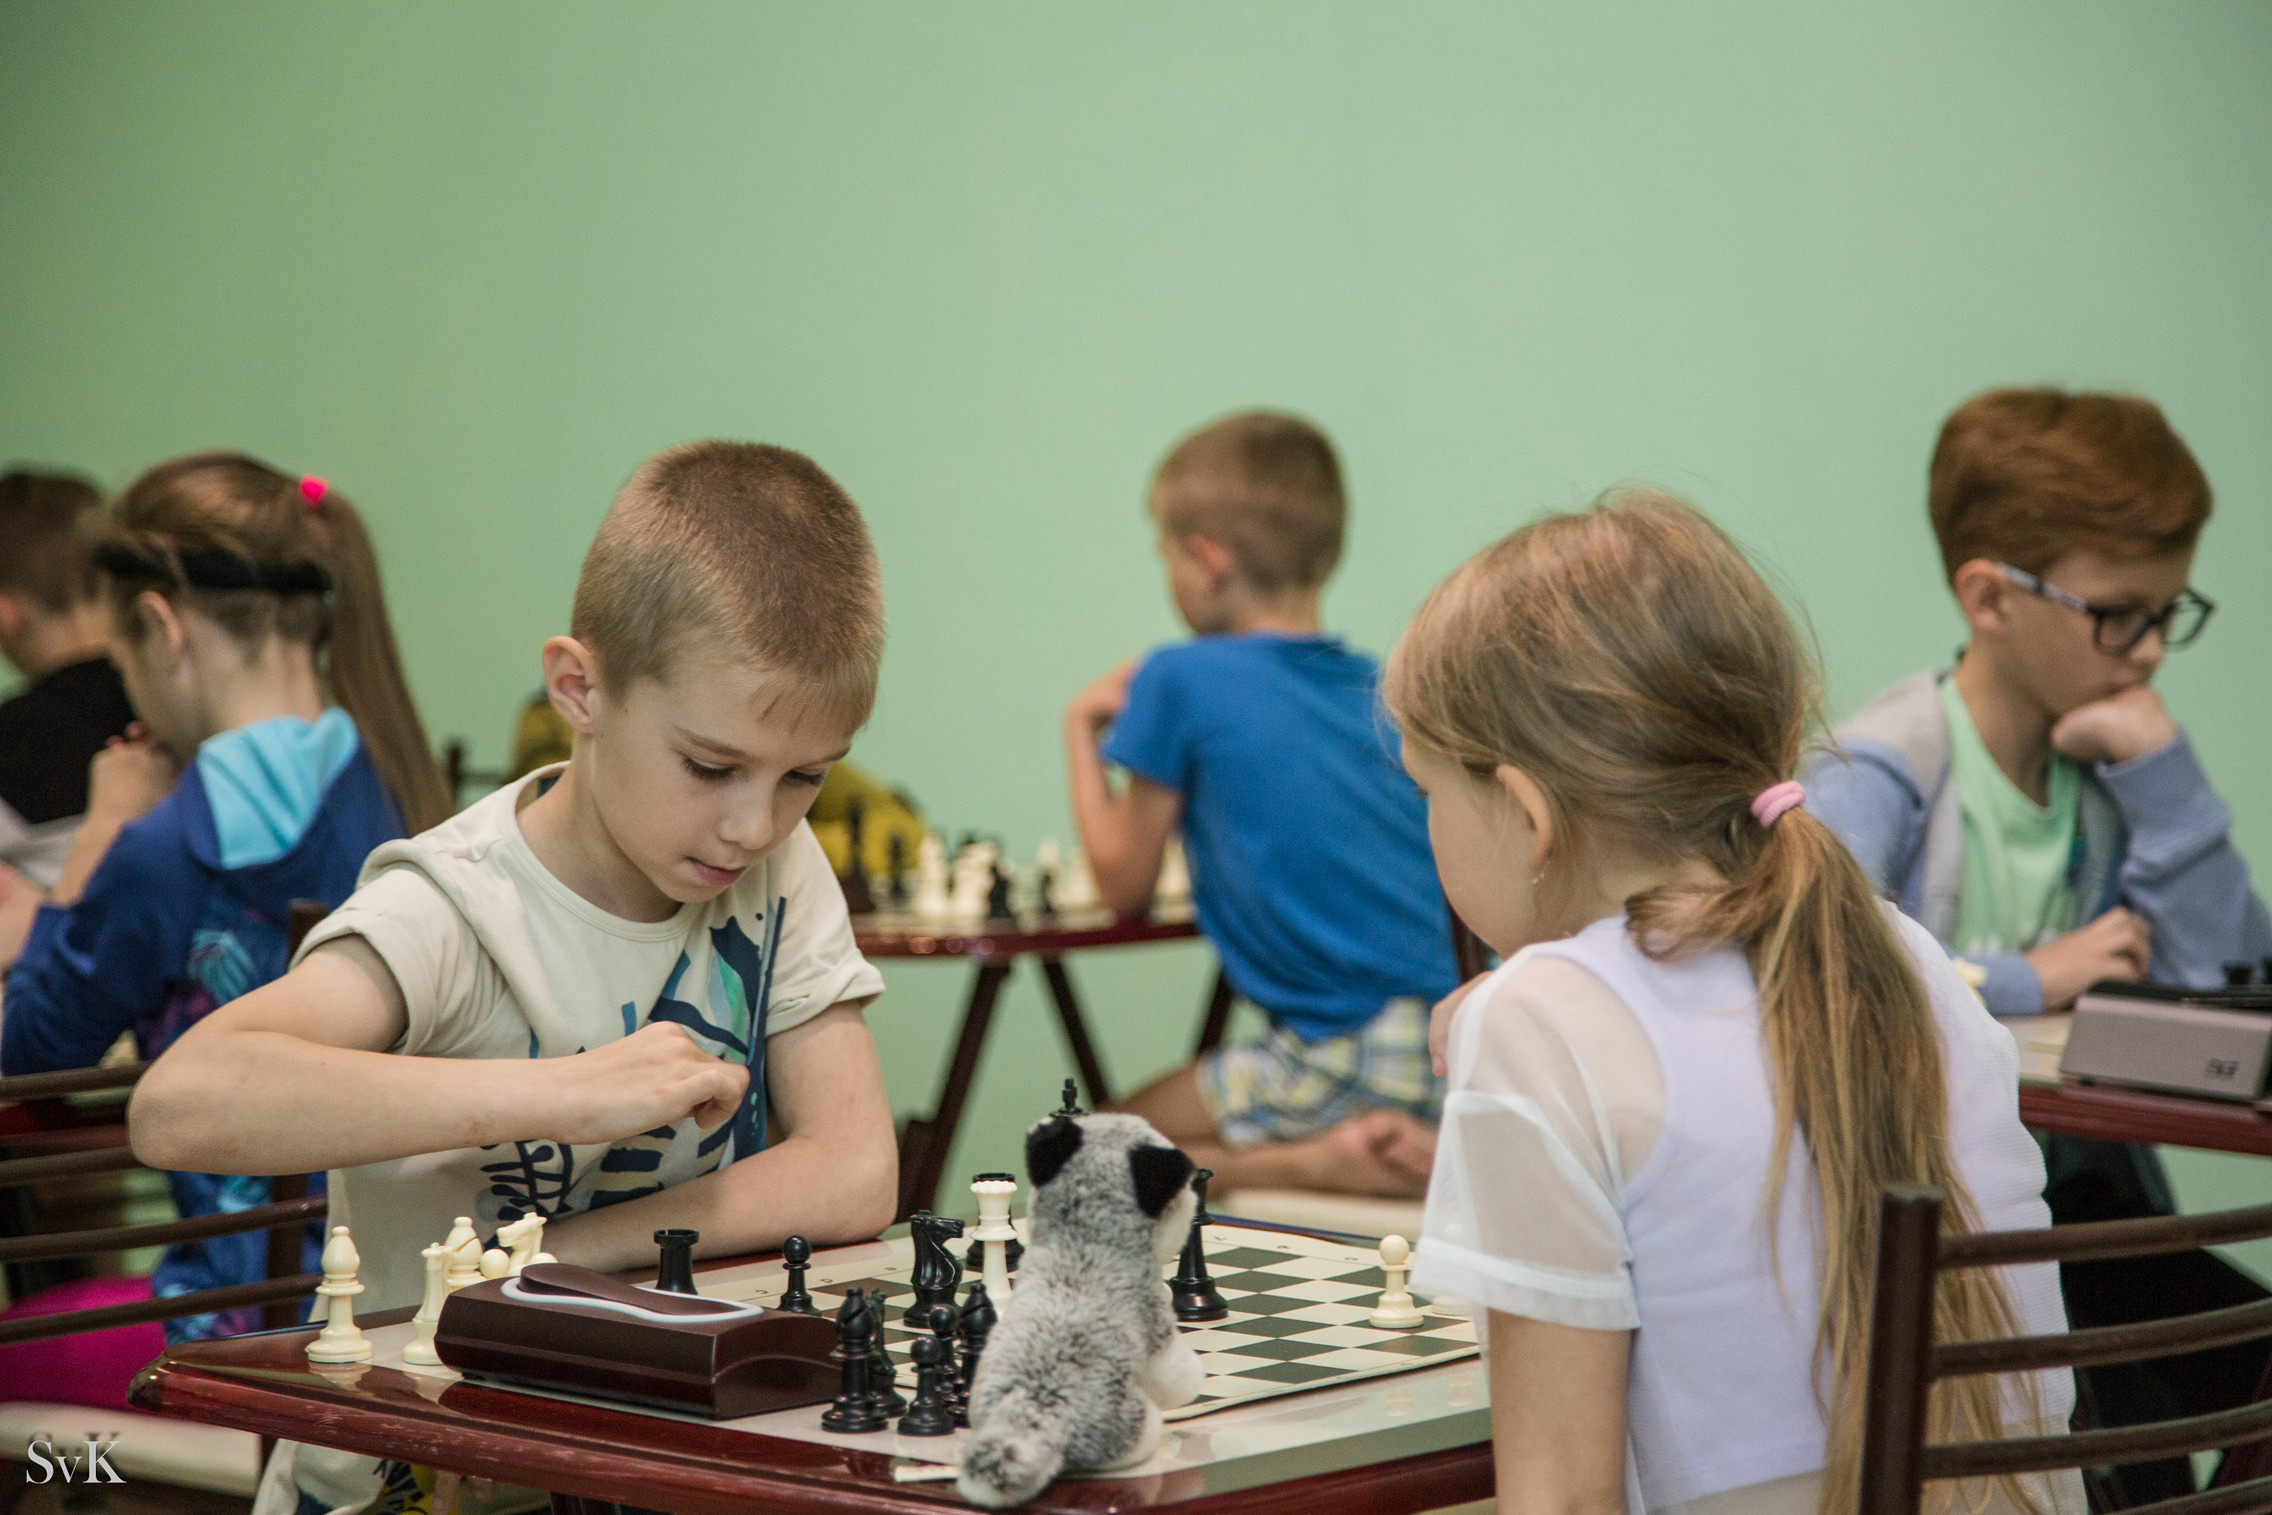 Турнир по быстрым шахматам в Витязево (фотографии Светланы Кругловой)